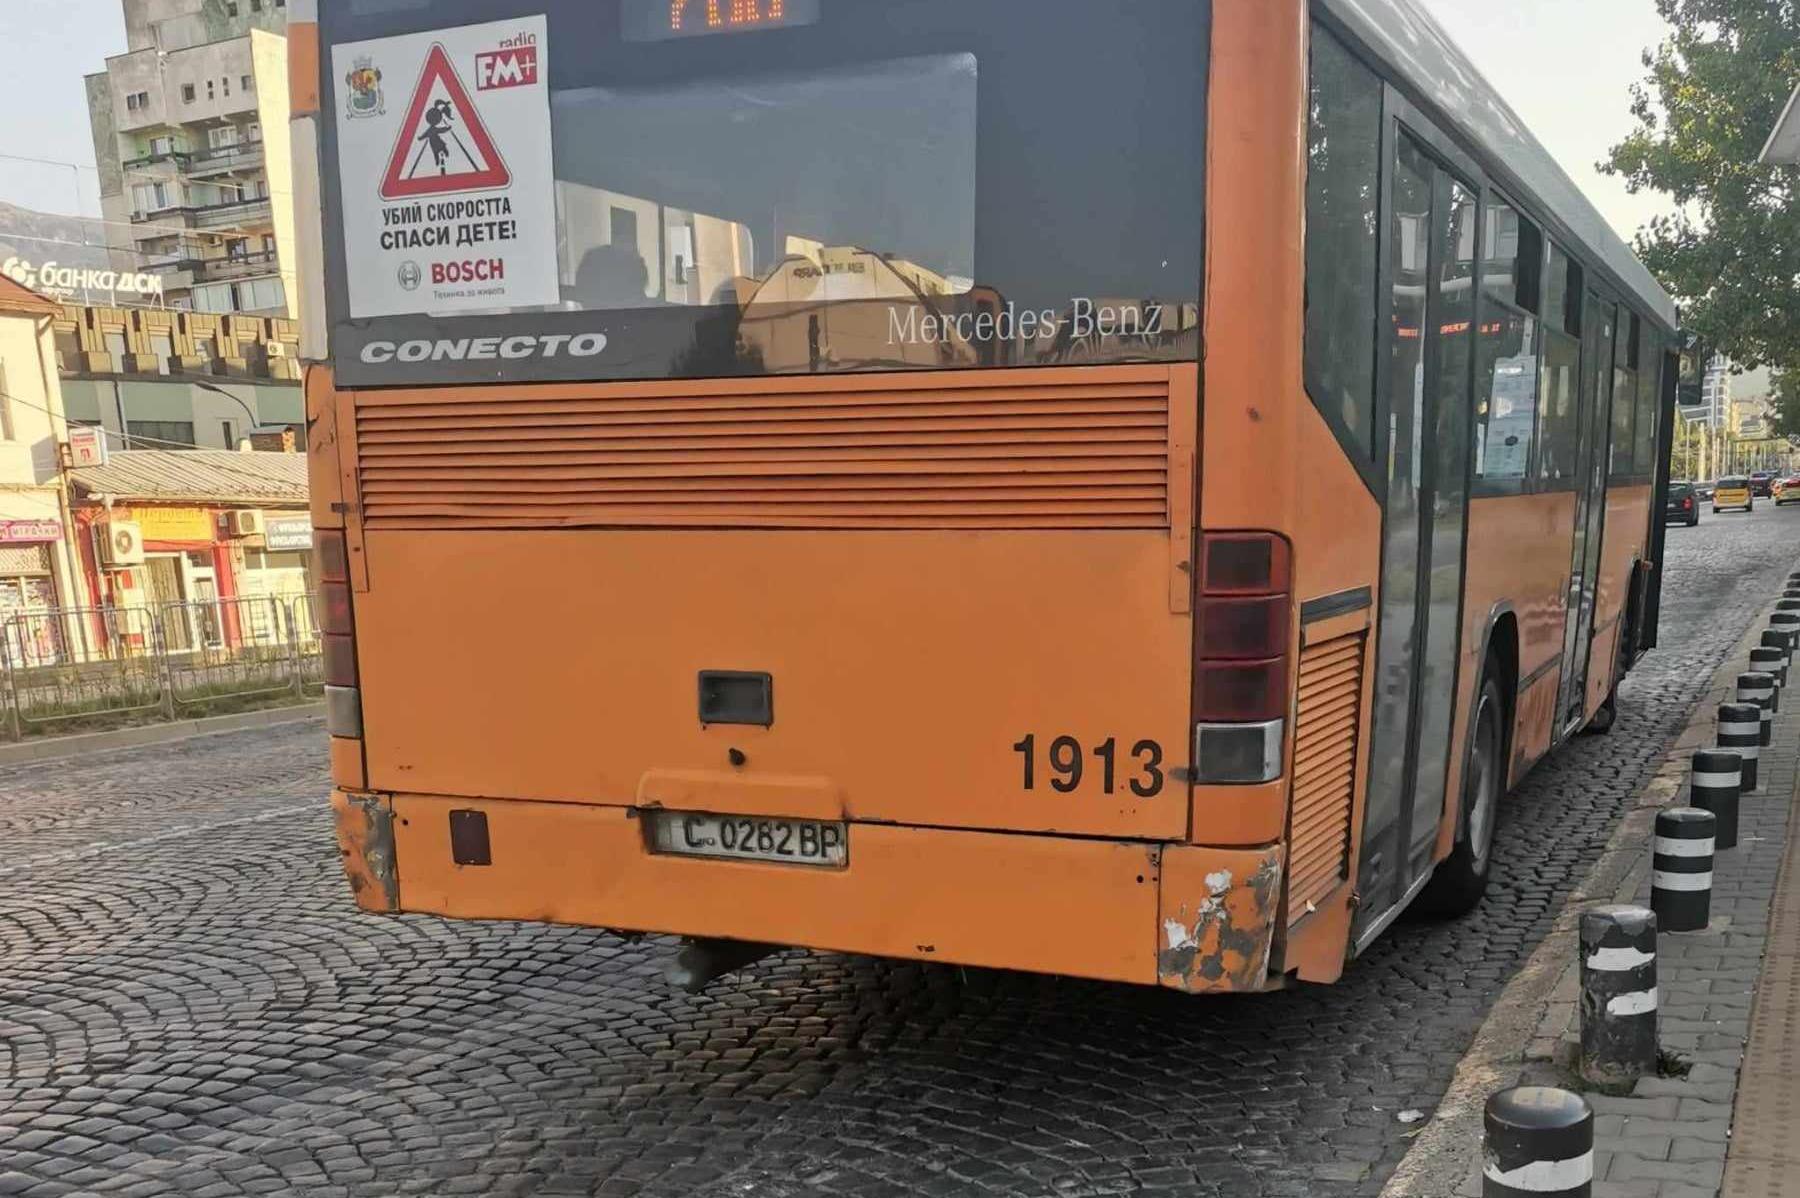 Шофьори в градския транспорт в София напускат заради стари превозни средств